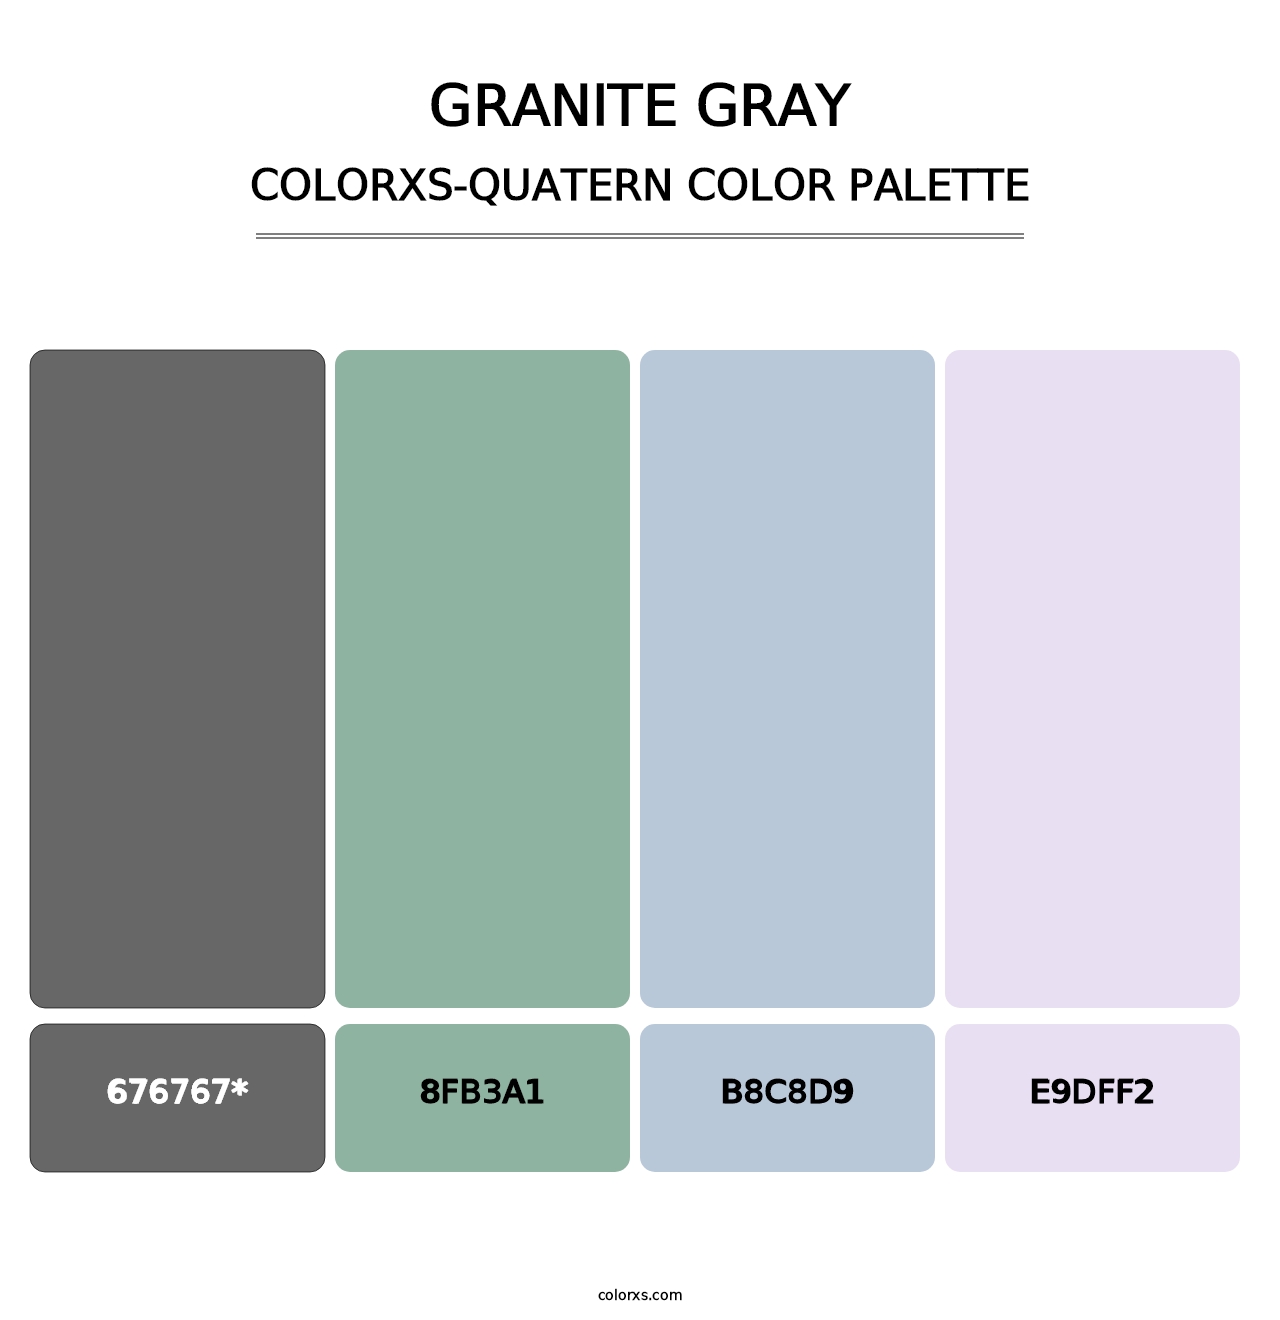 Granite Gray - Colorxs Quatern Palette